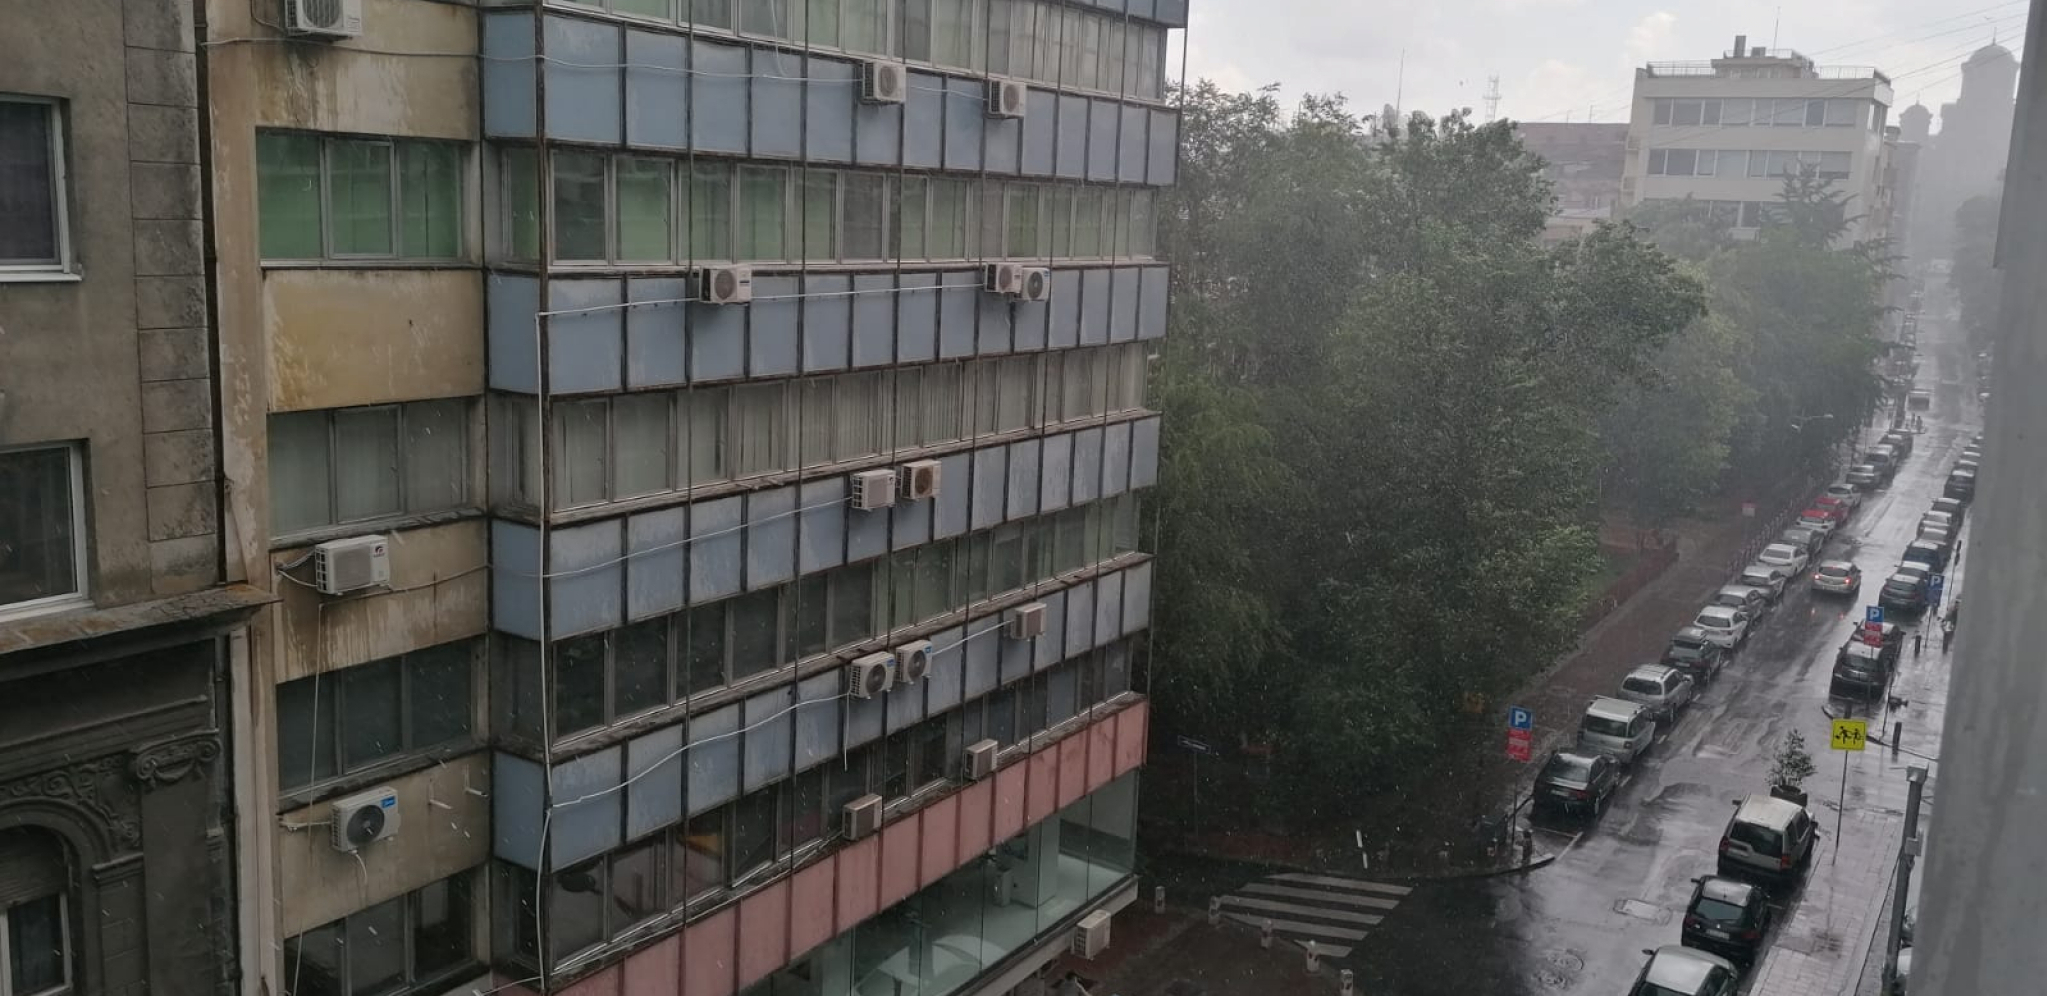 POTOP U BEOGRADU Jaka kiša i grad pogodili srpsku prestonicu (FOTO/VIDEO)